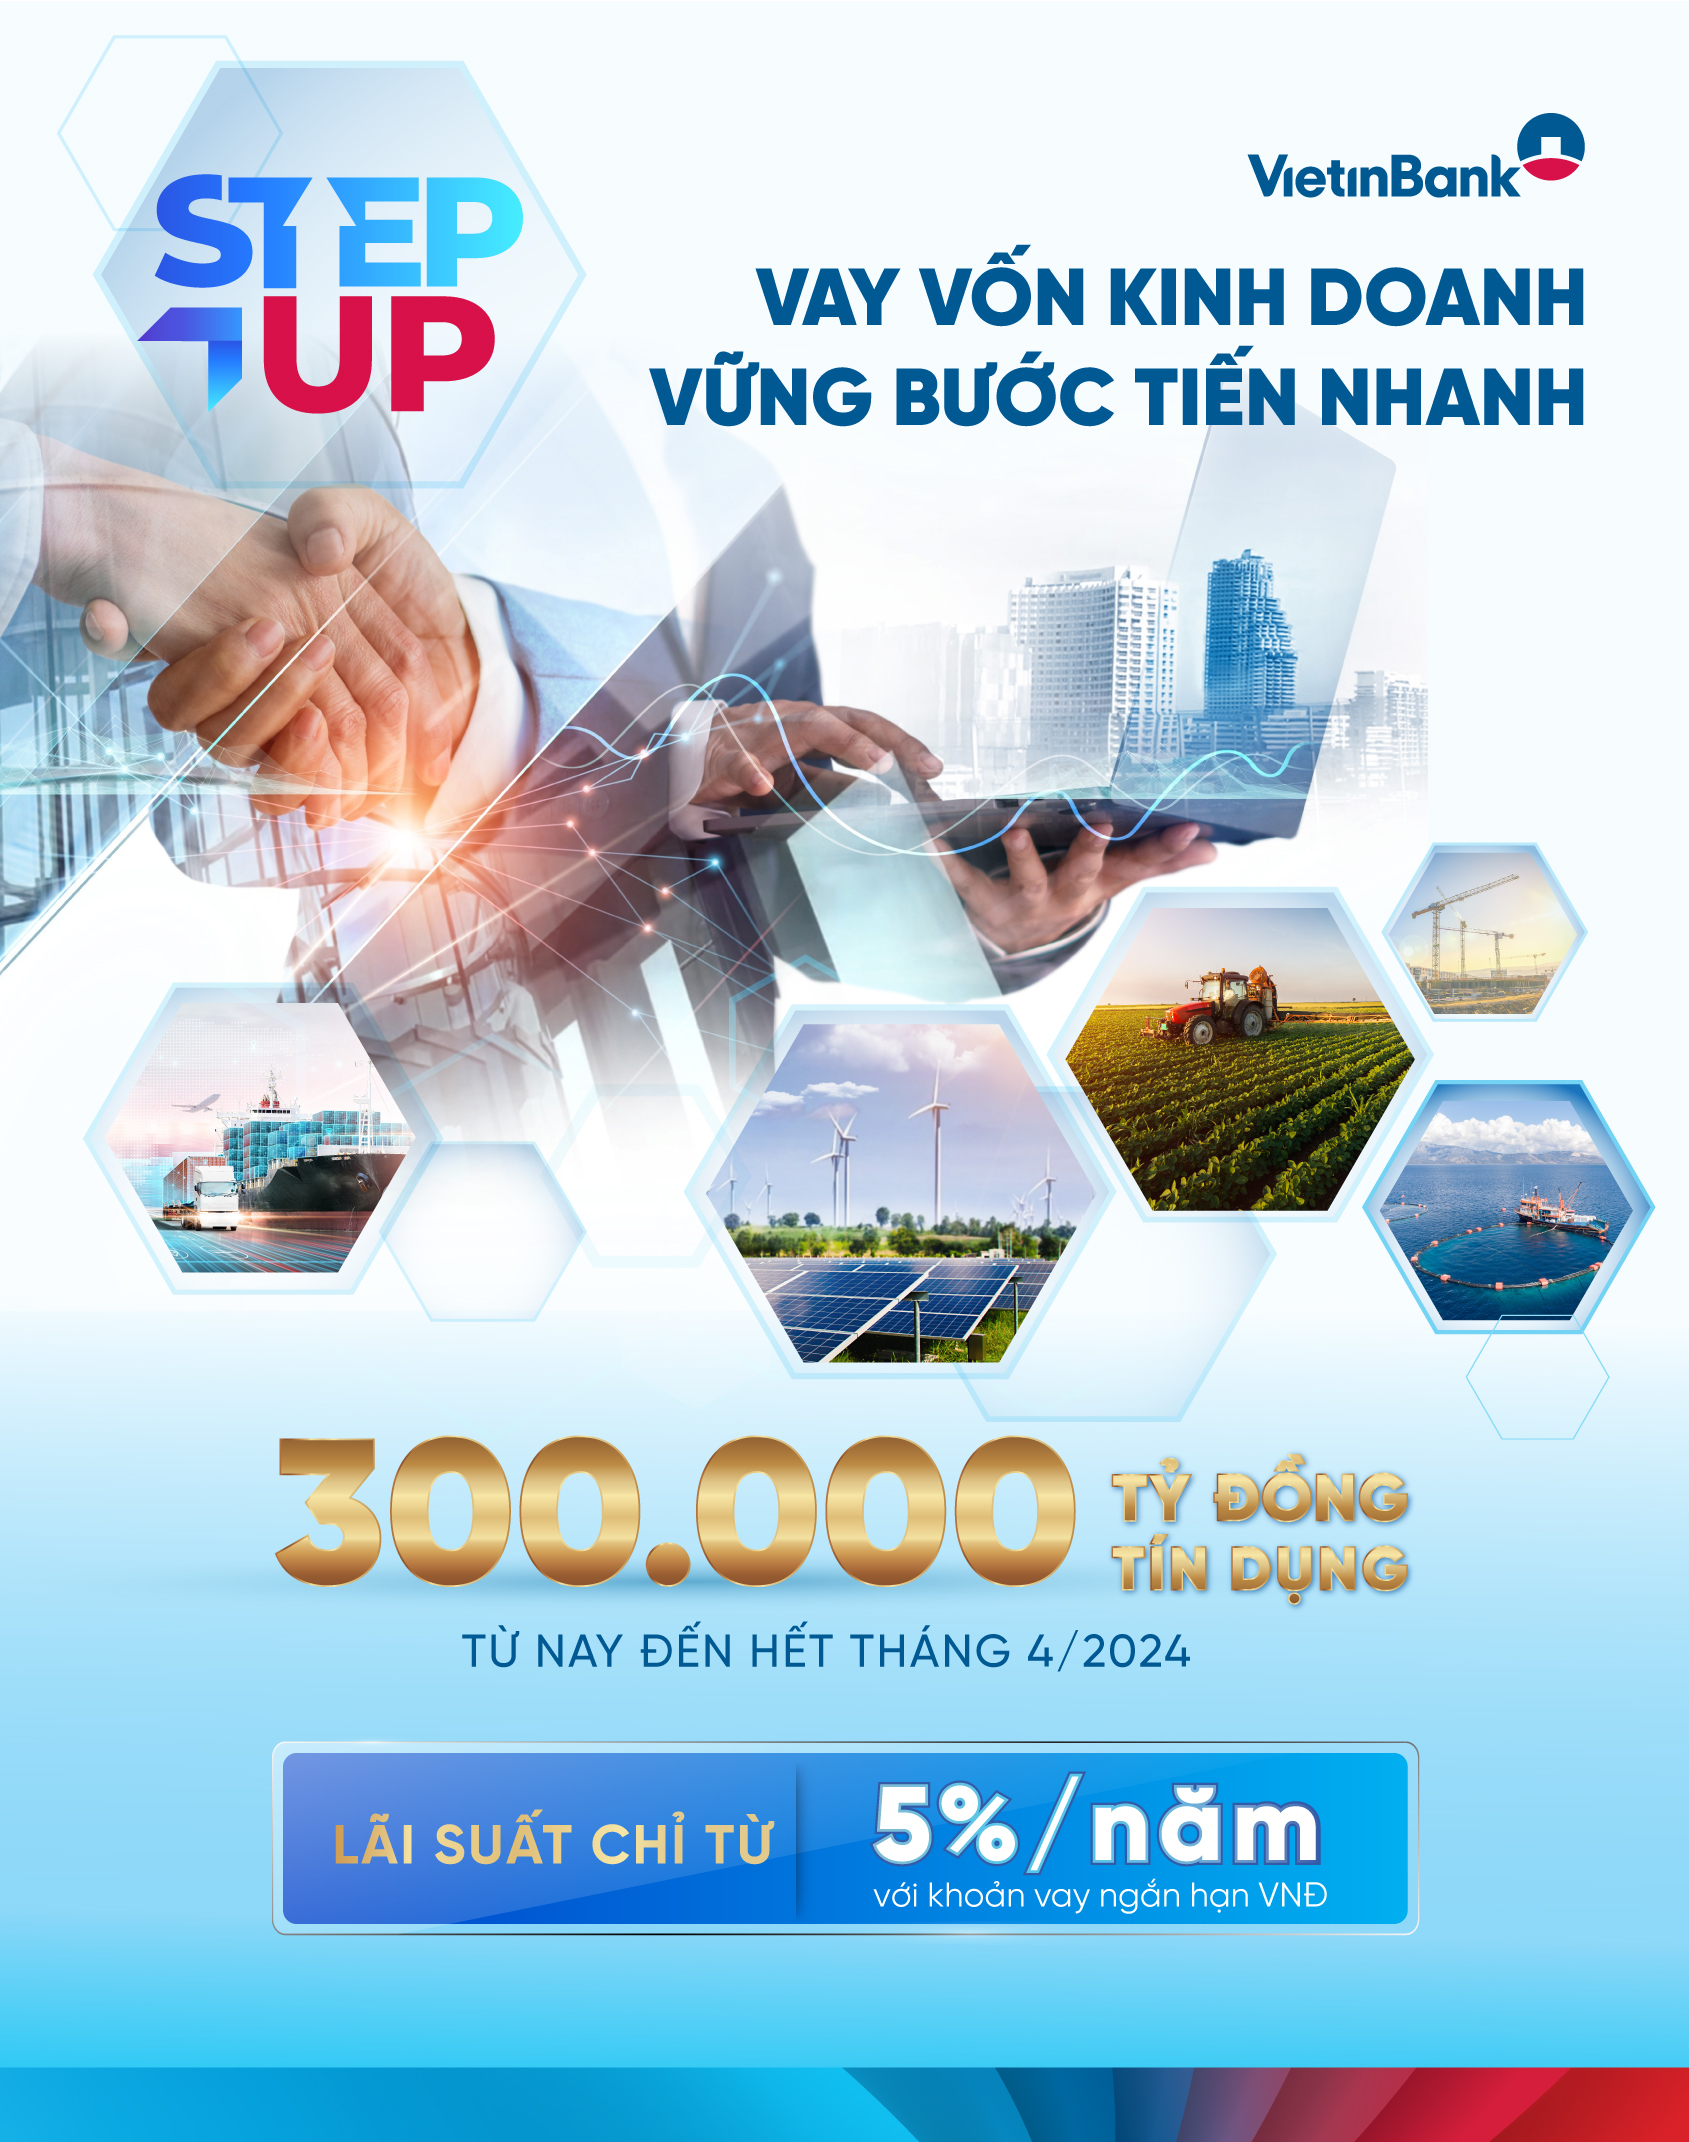 VietinBank tung 300 nghìn tỷ đồng tín dụng ưu đãi, hỗ trợ doanh nghiệp bứt tốc kinh doanh - 1